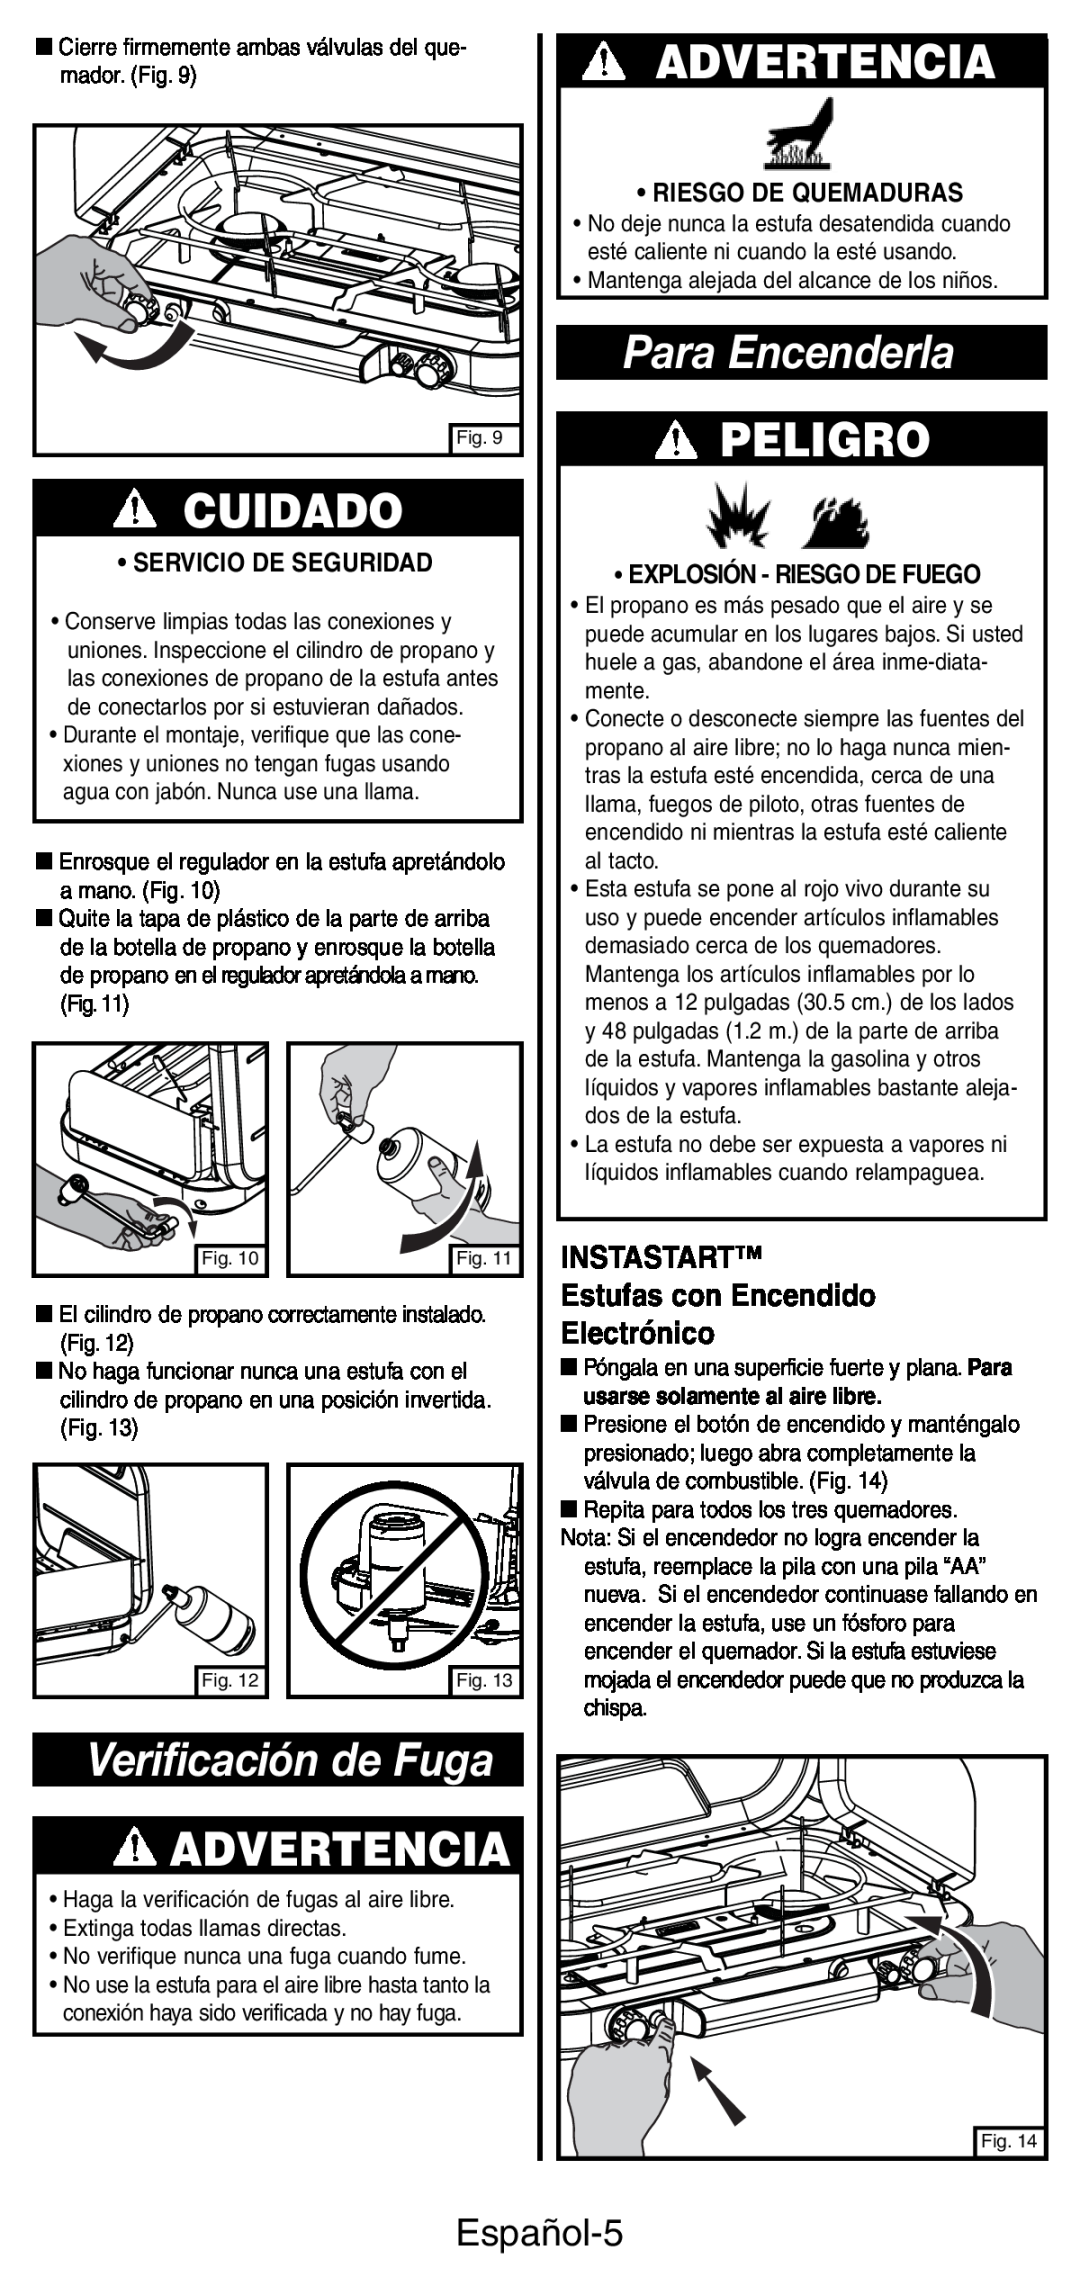 Coleman 5444 Series manual Para Encenderla, Verificación de Fuga, Cuidado, Advertencia, Peligro, Español-5, Electrónico 